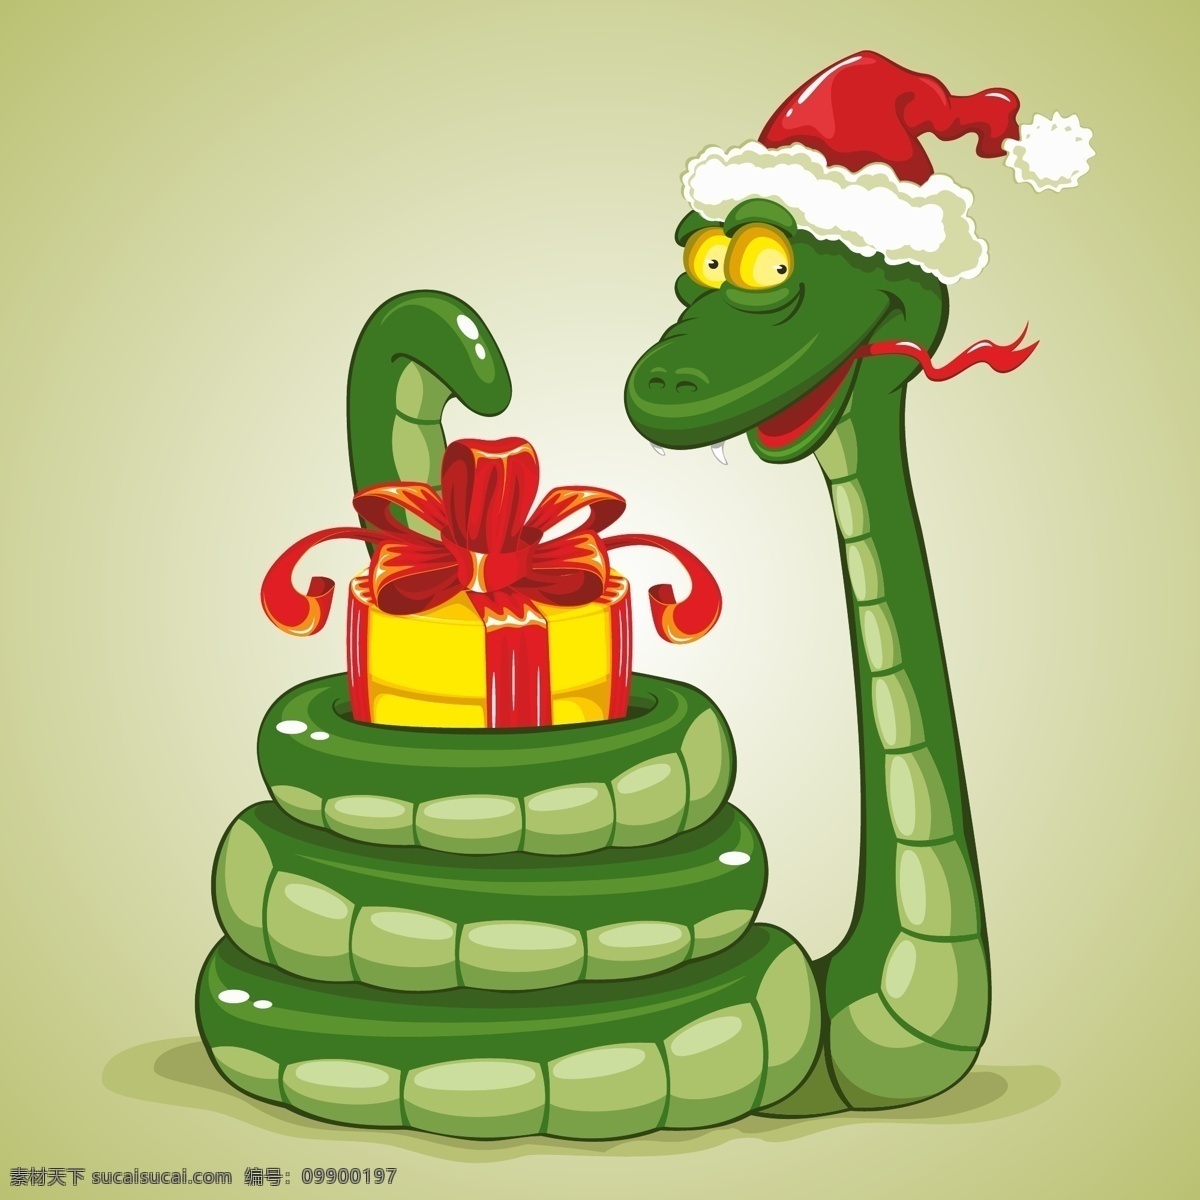 卡通 蛇 矢量 可爱 动物 圣诞帽 礼盒 红果 矢量图 设计素材 eps格式 2013 新年 春节 蛇年